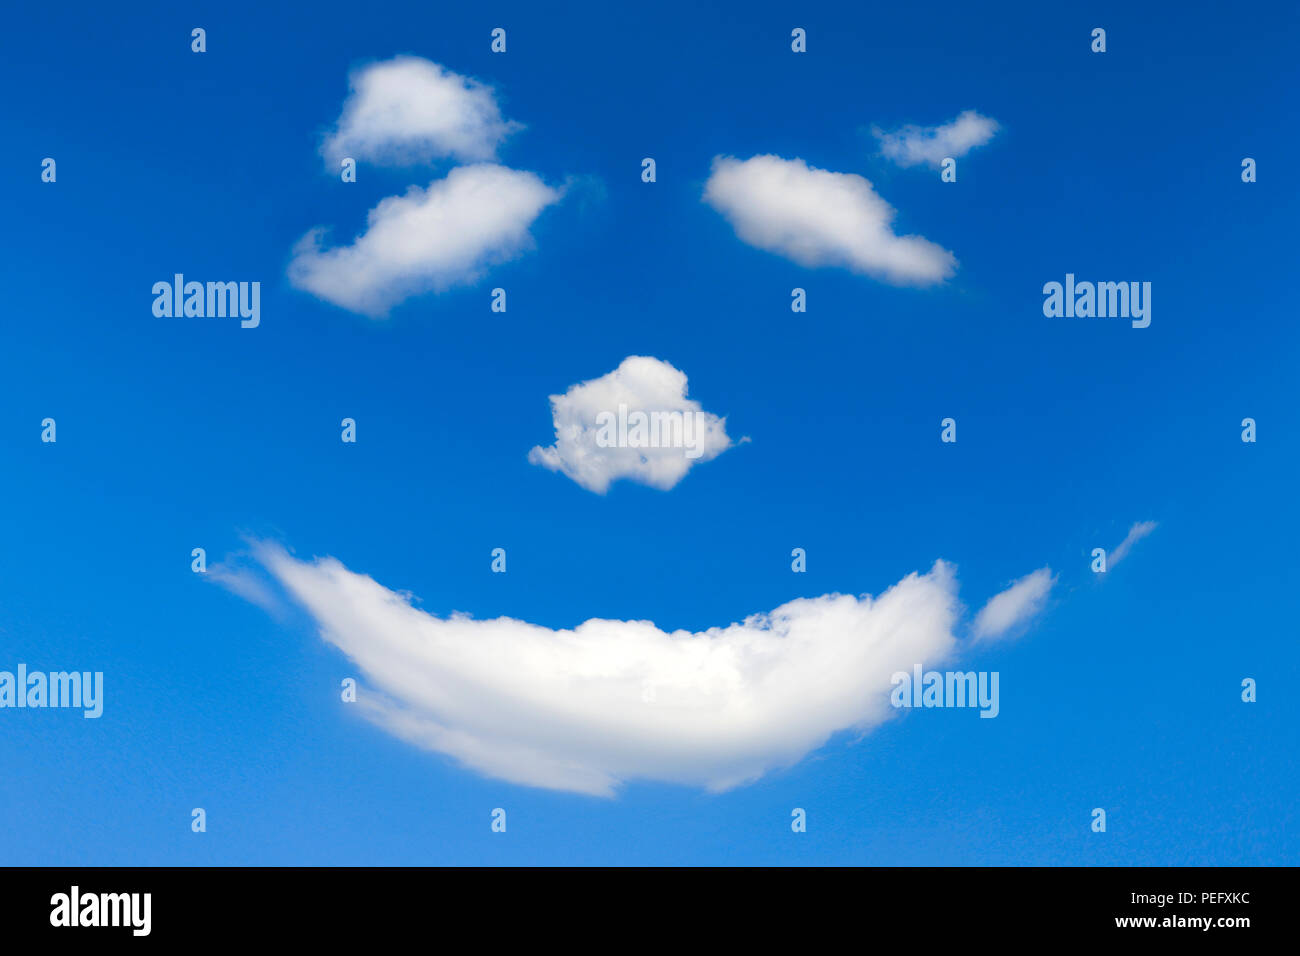 Digital Zusammensetzung, Gesicht, Himmel, Luft, Mimik, Smiley, Smilie, Wetter, Wind, Wolken, Wolken, Cloud, Cloud Gesicht, Zufriedenheit, blau, b Stockfoto